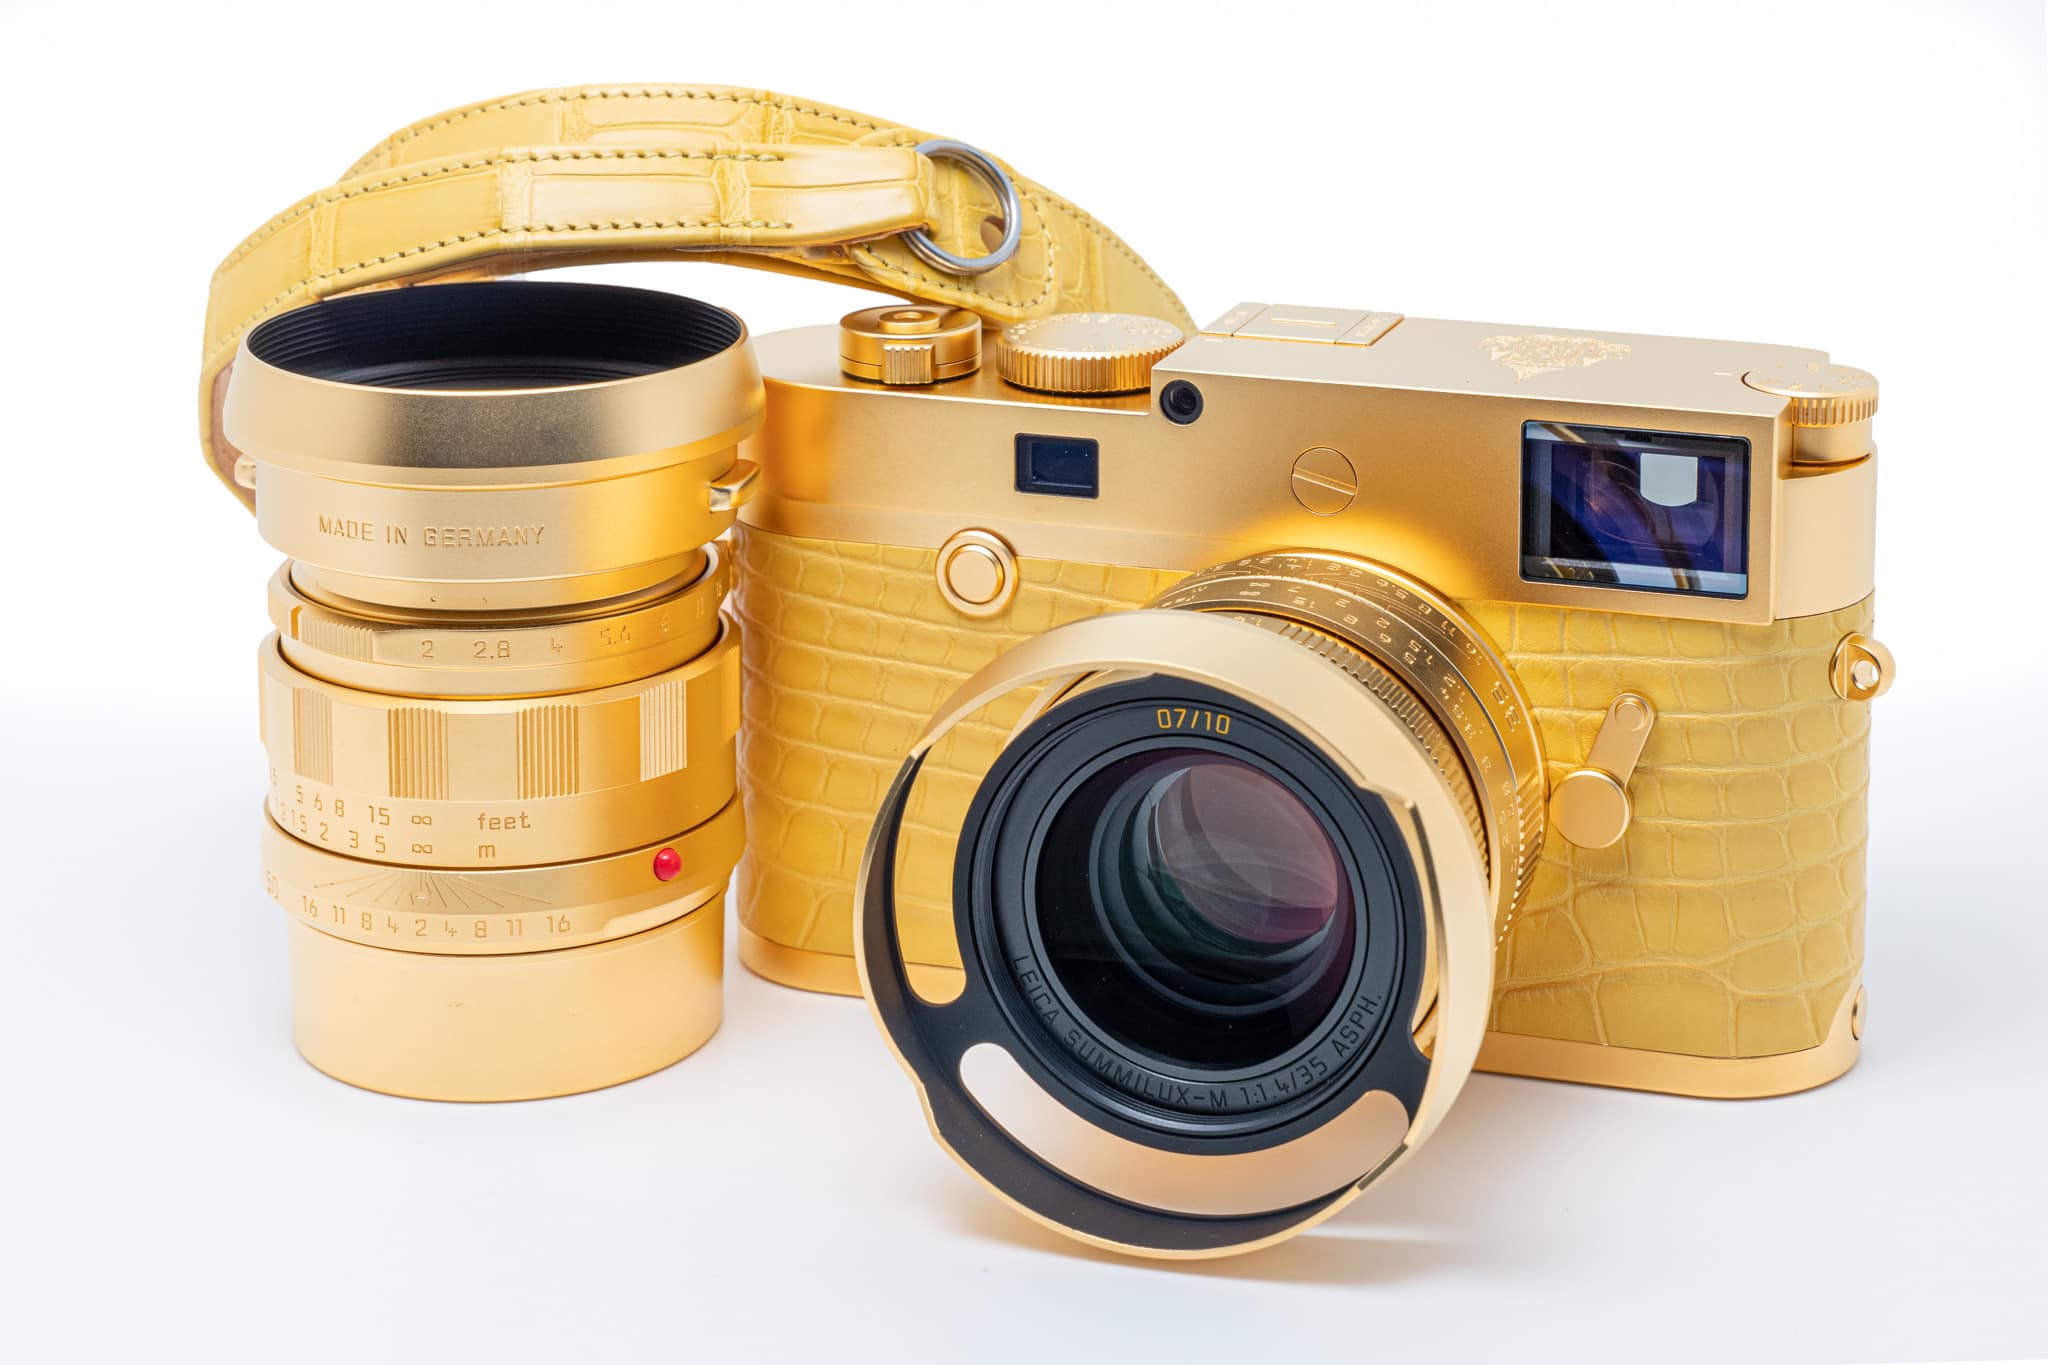 Thaibev จัดทำกล้อง Leica M10 P Limited Edition เนื่องในโอกาสมหามงคล พระราชพิธีบรมราชาภิเษก